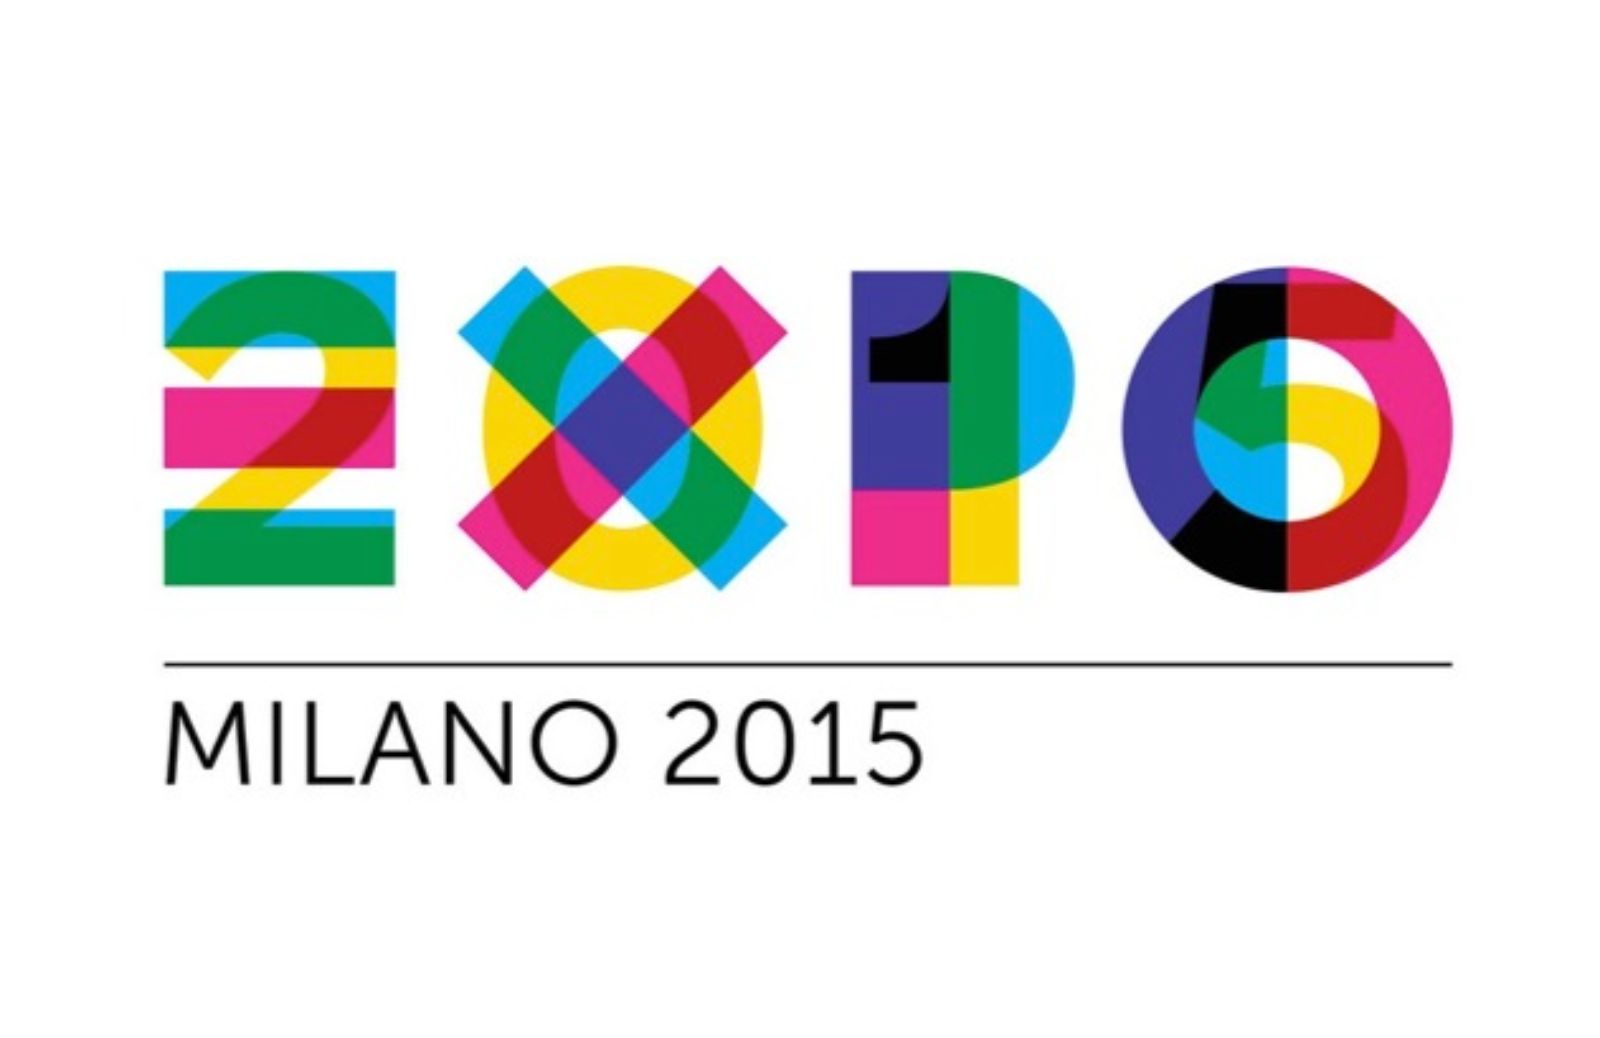 Expo 2015 Milano: come acquistare i biglietti